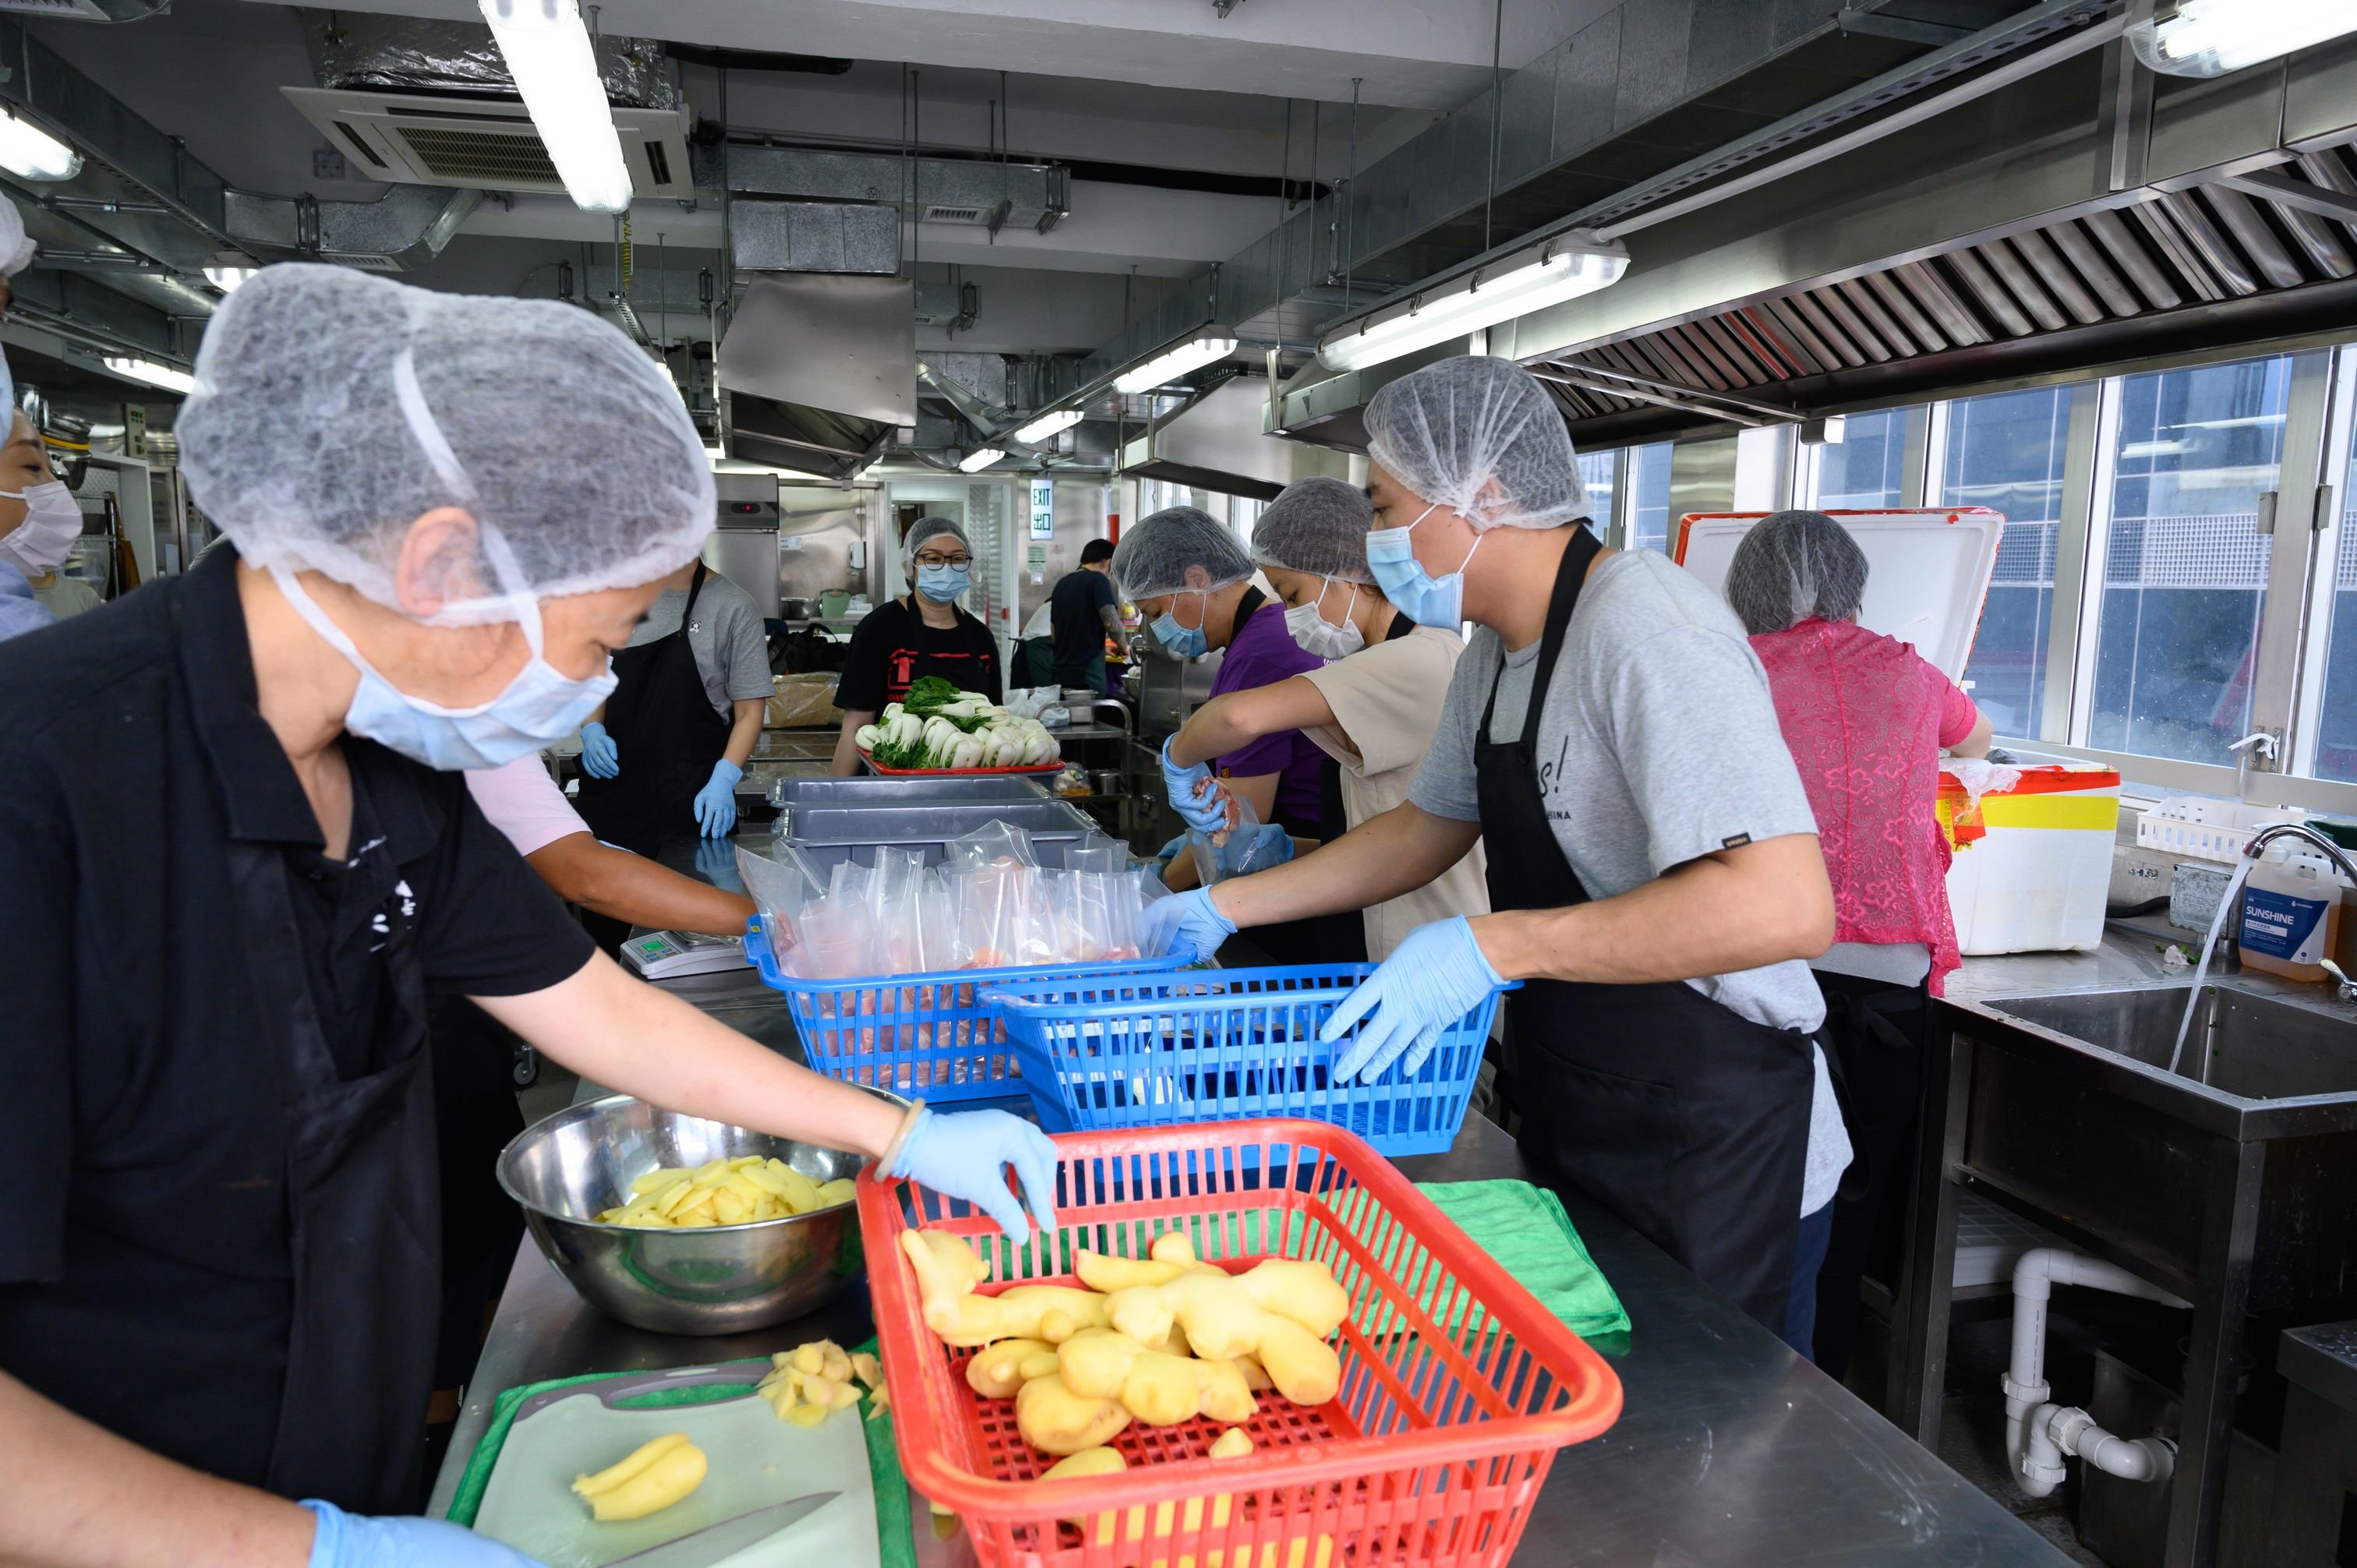 在香港，樂施會推出「慳得有營餸基層」計劃，「有營餸包」由社會企業「共廚家作」製作。共廚家作在2016年由樂施會及社創基金提供種子基金資助成立，旨在透過善用廚房閒置時段，讓基層市民進駐制作美食出售，以賺取收入。